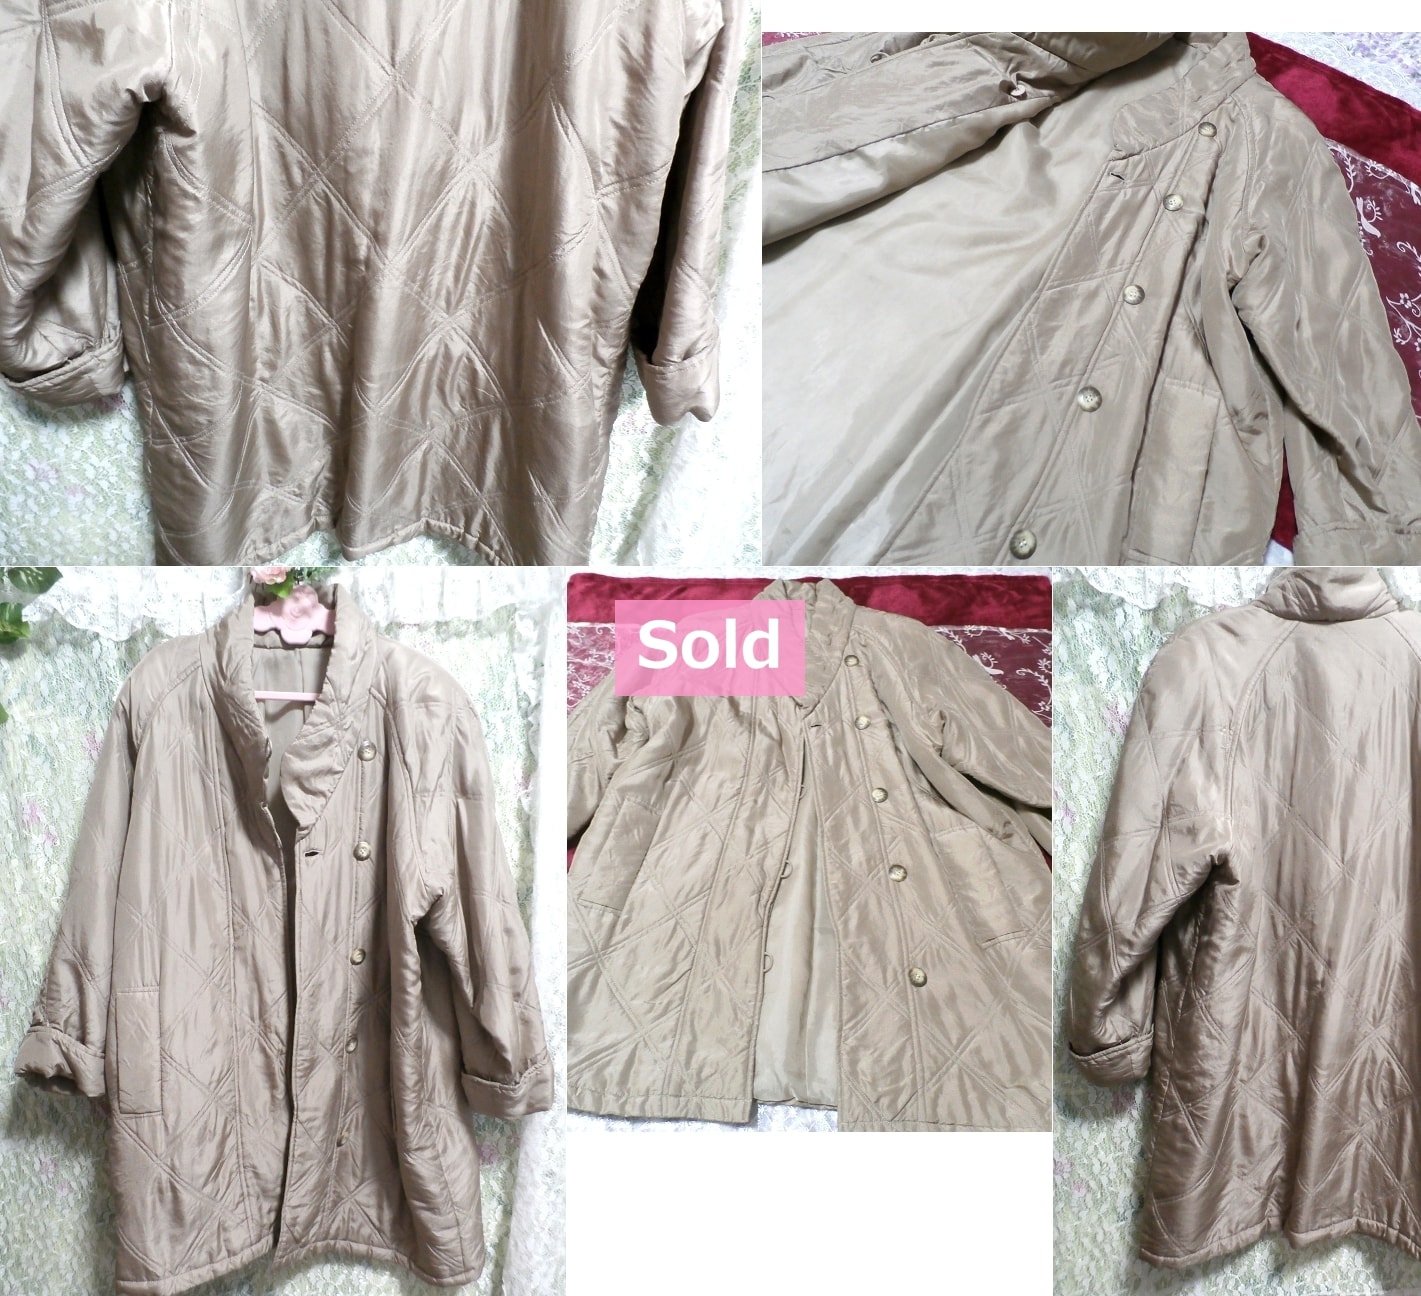 絹シルク100%亜麻色のサラサラロングコート/外套 Silk 100% flax color smooth coat